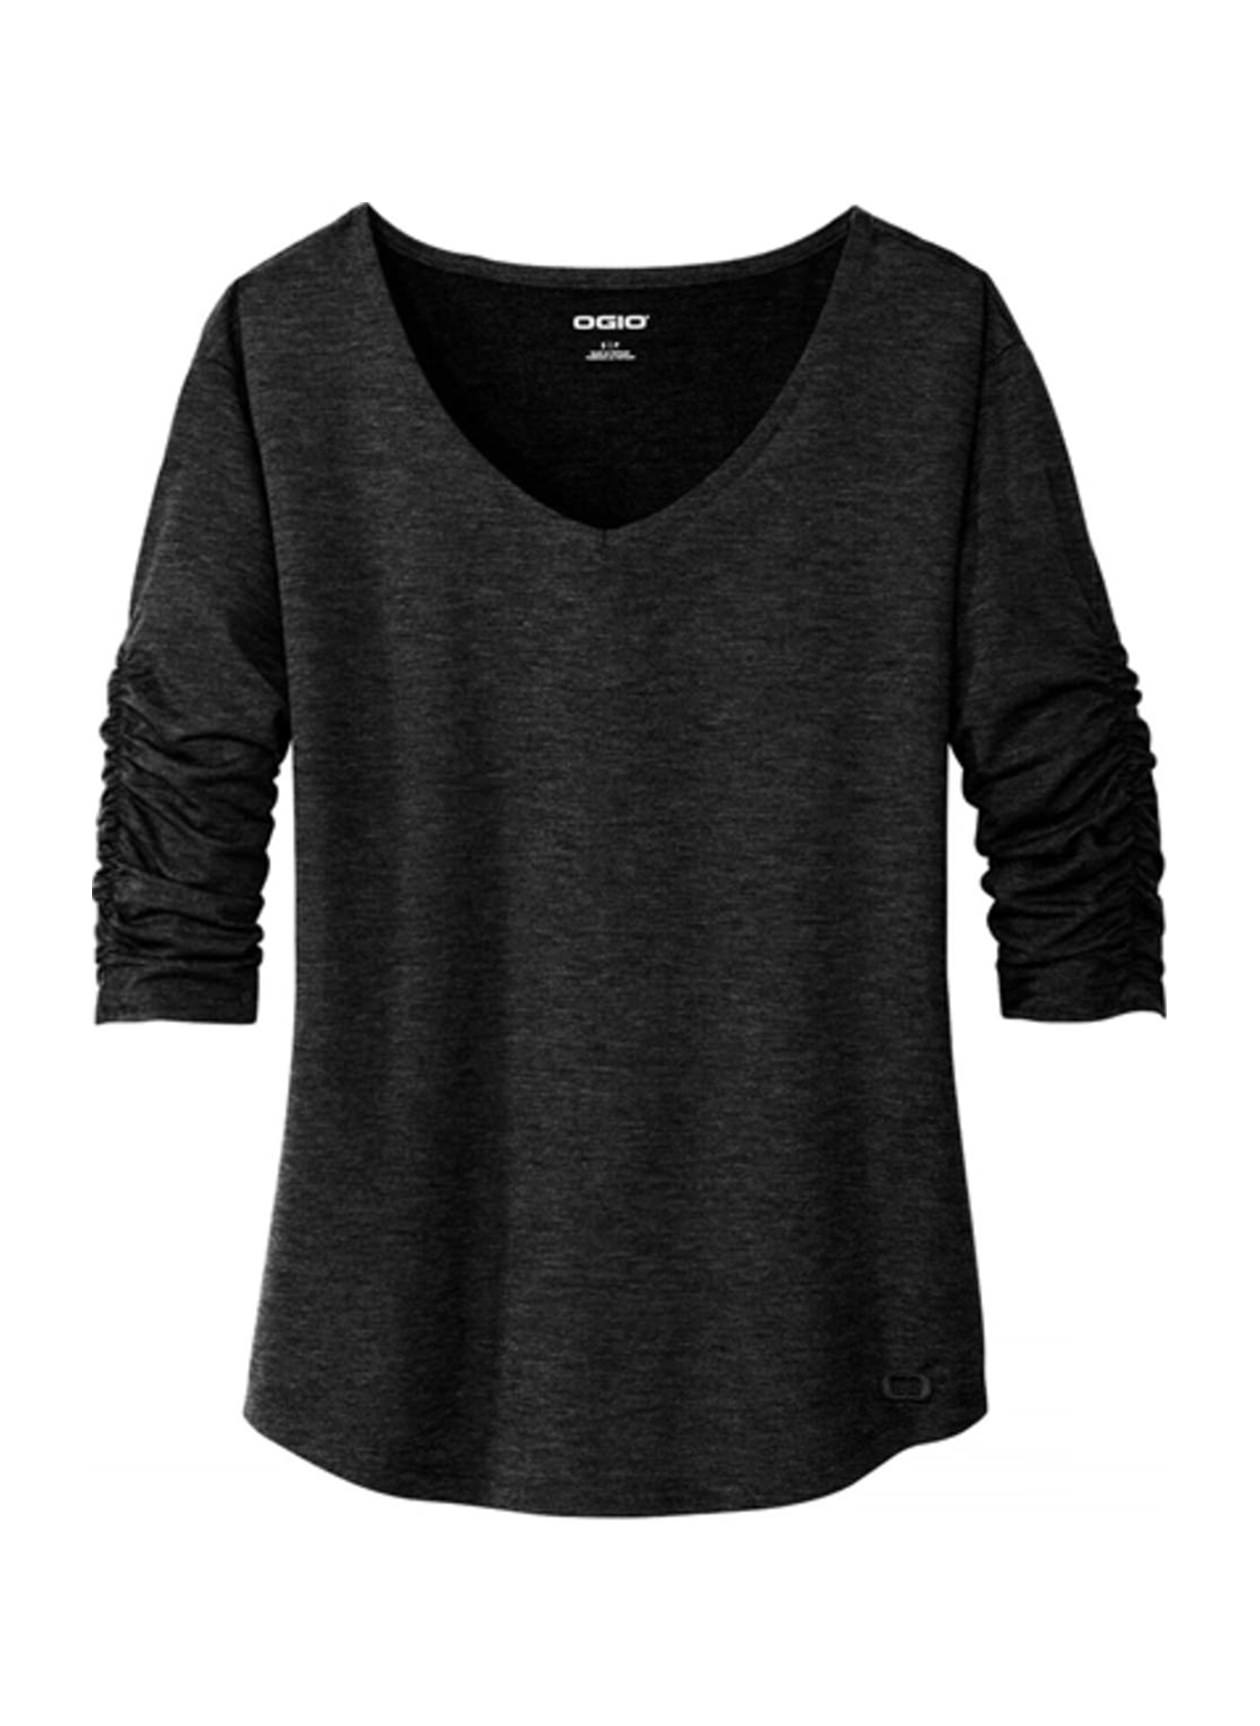 OGIO Women's Blacktop Evolution V-Neck Long-Sleeve T-Shirt